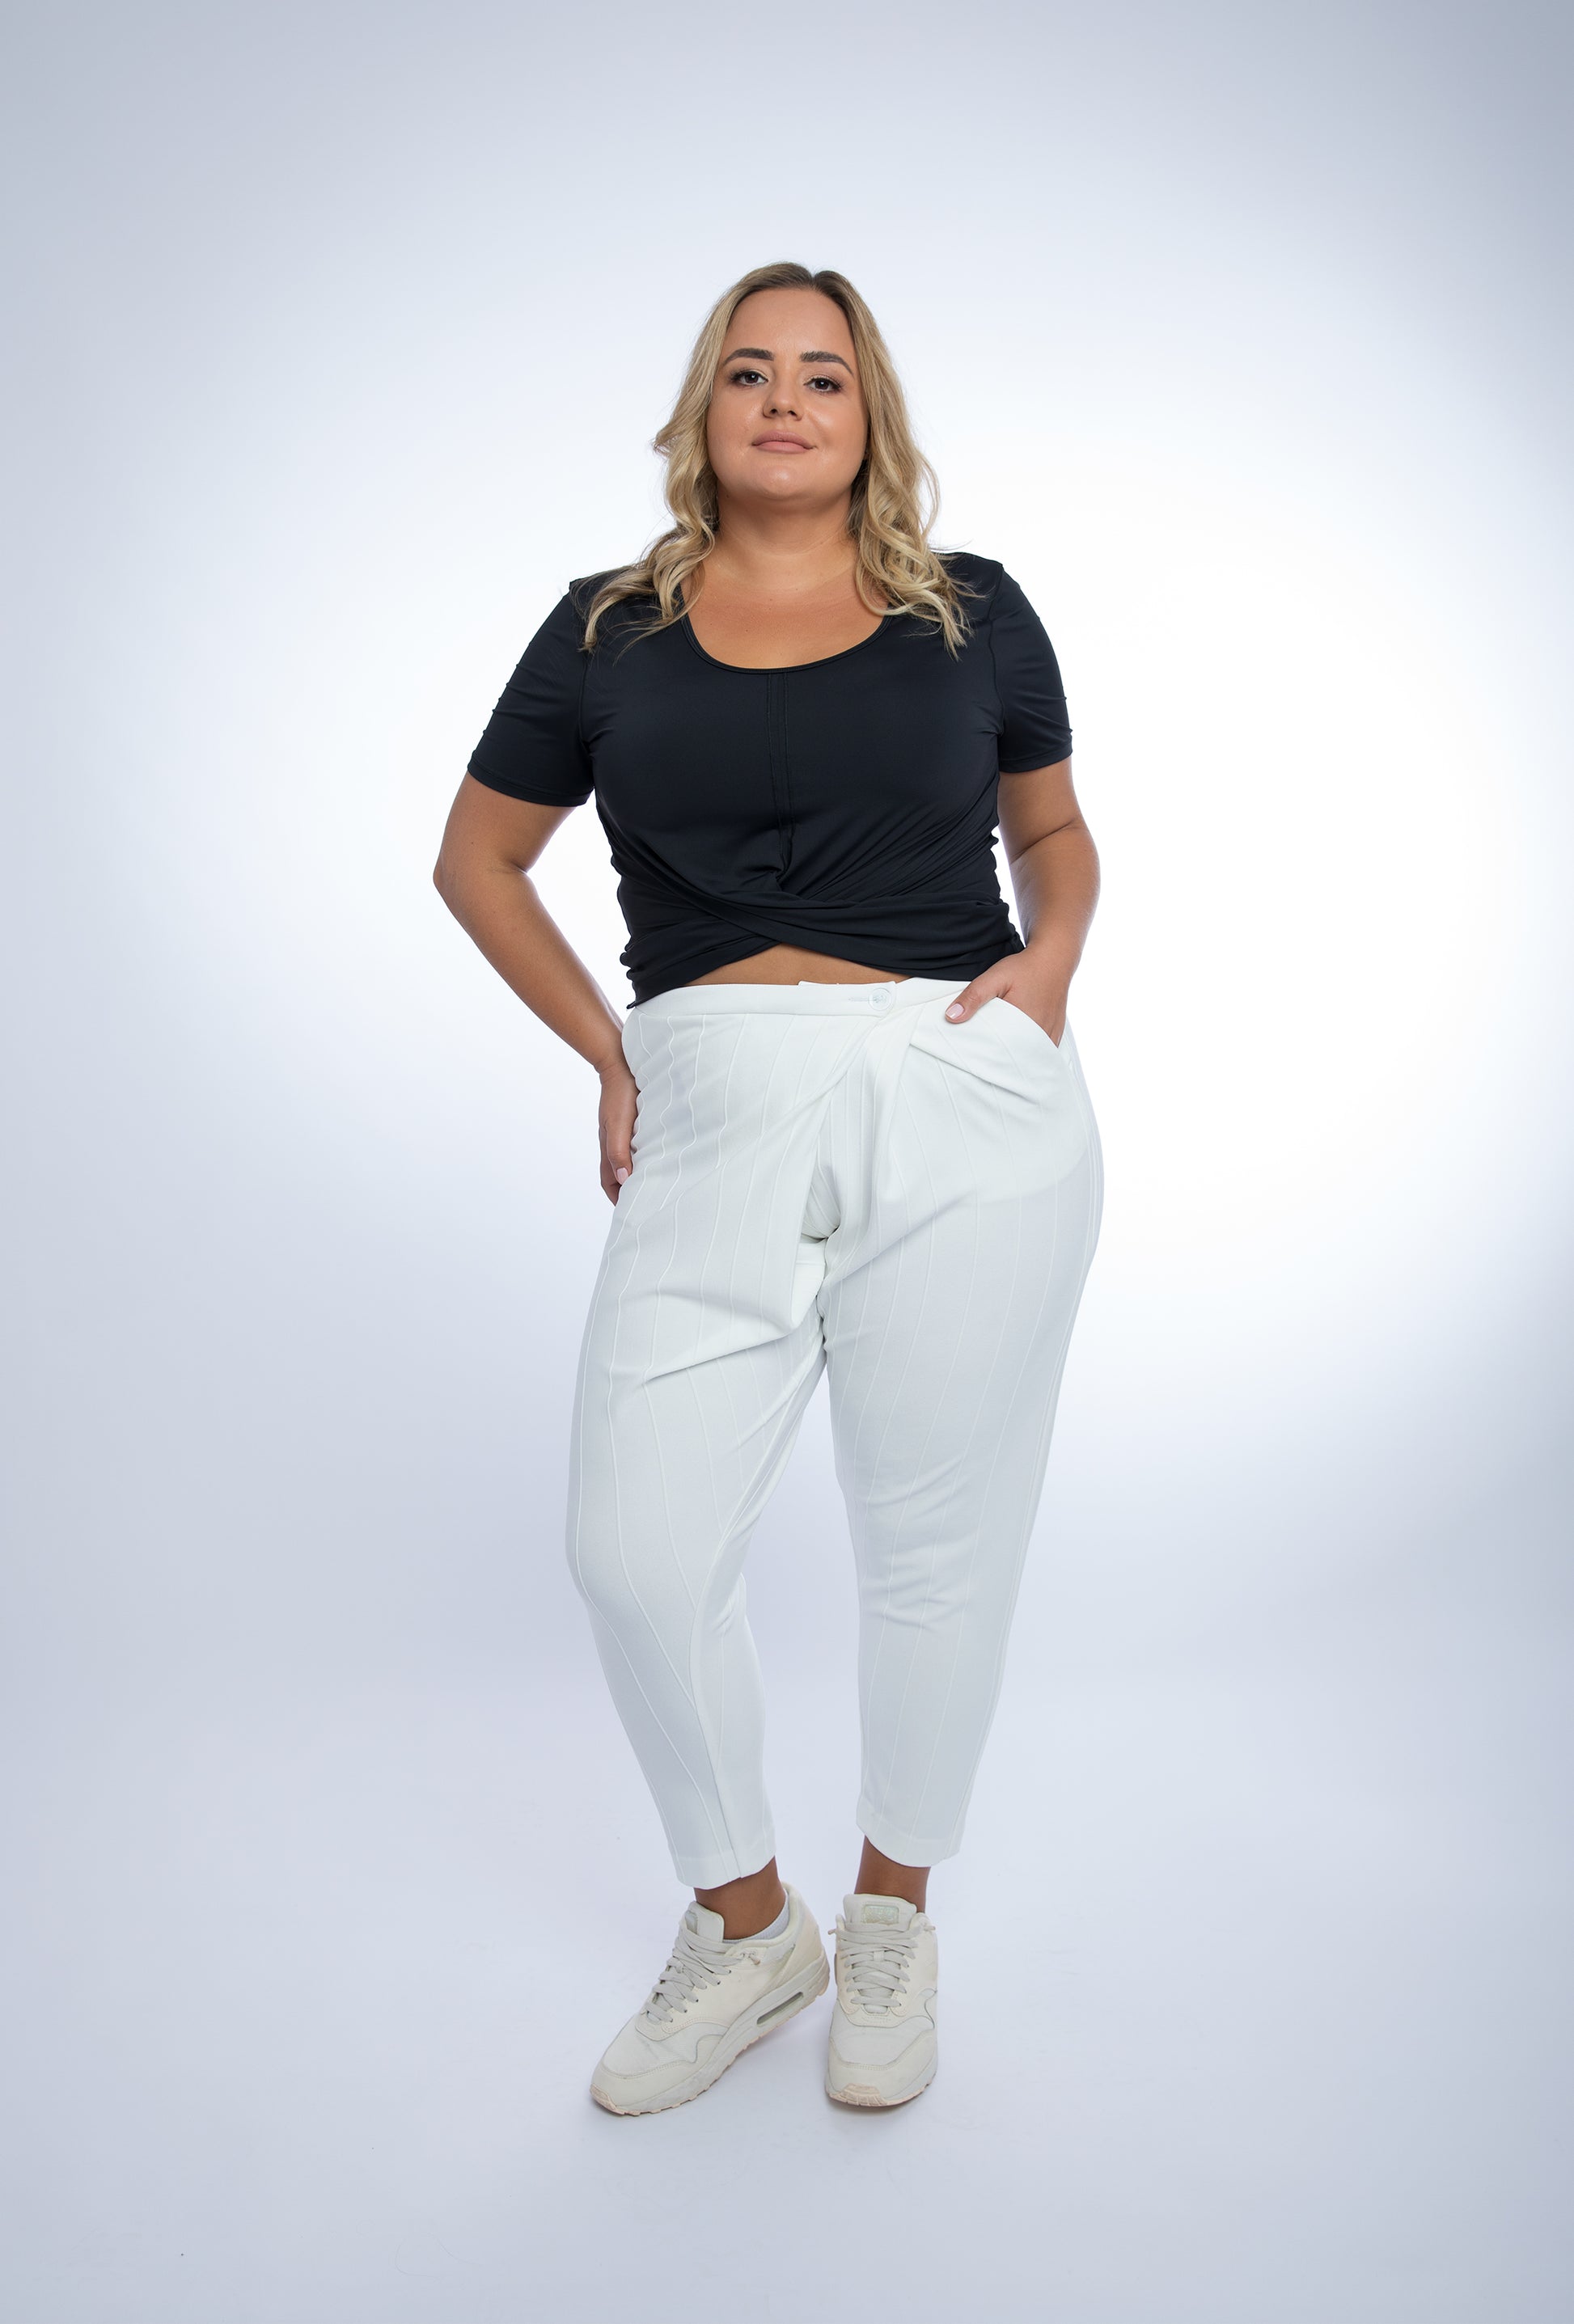 Linda Stylish Athleisure Pants – Plus Size XL